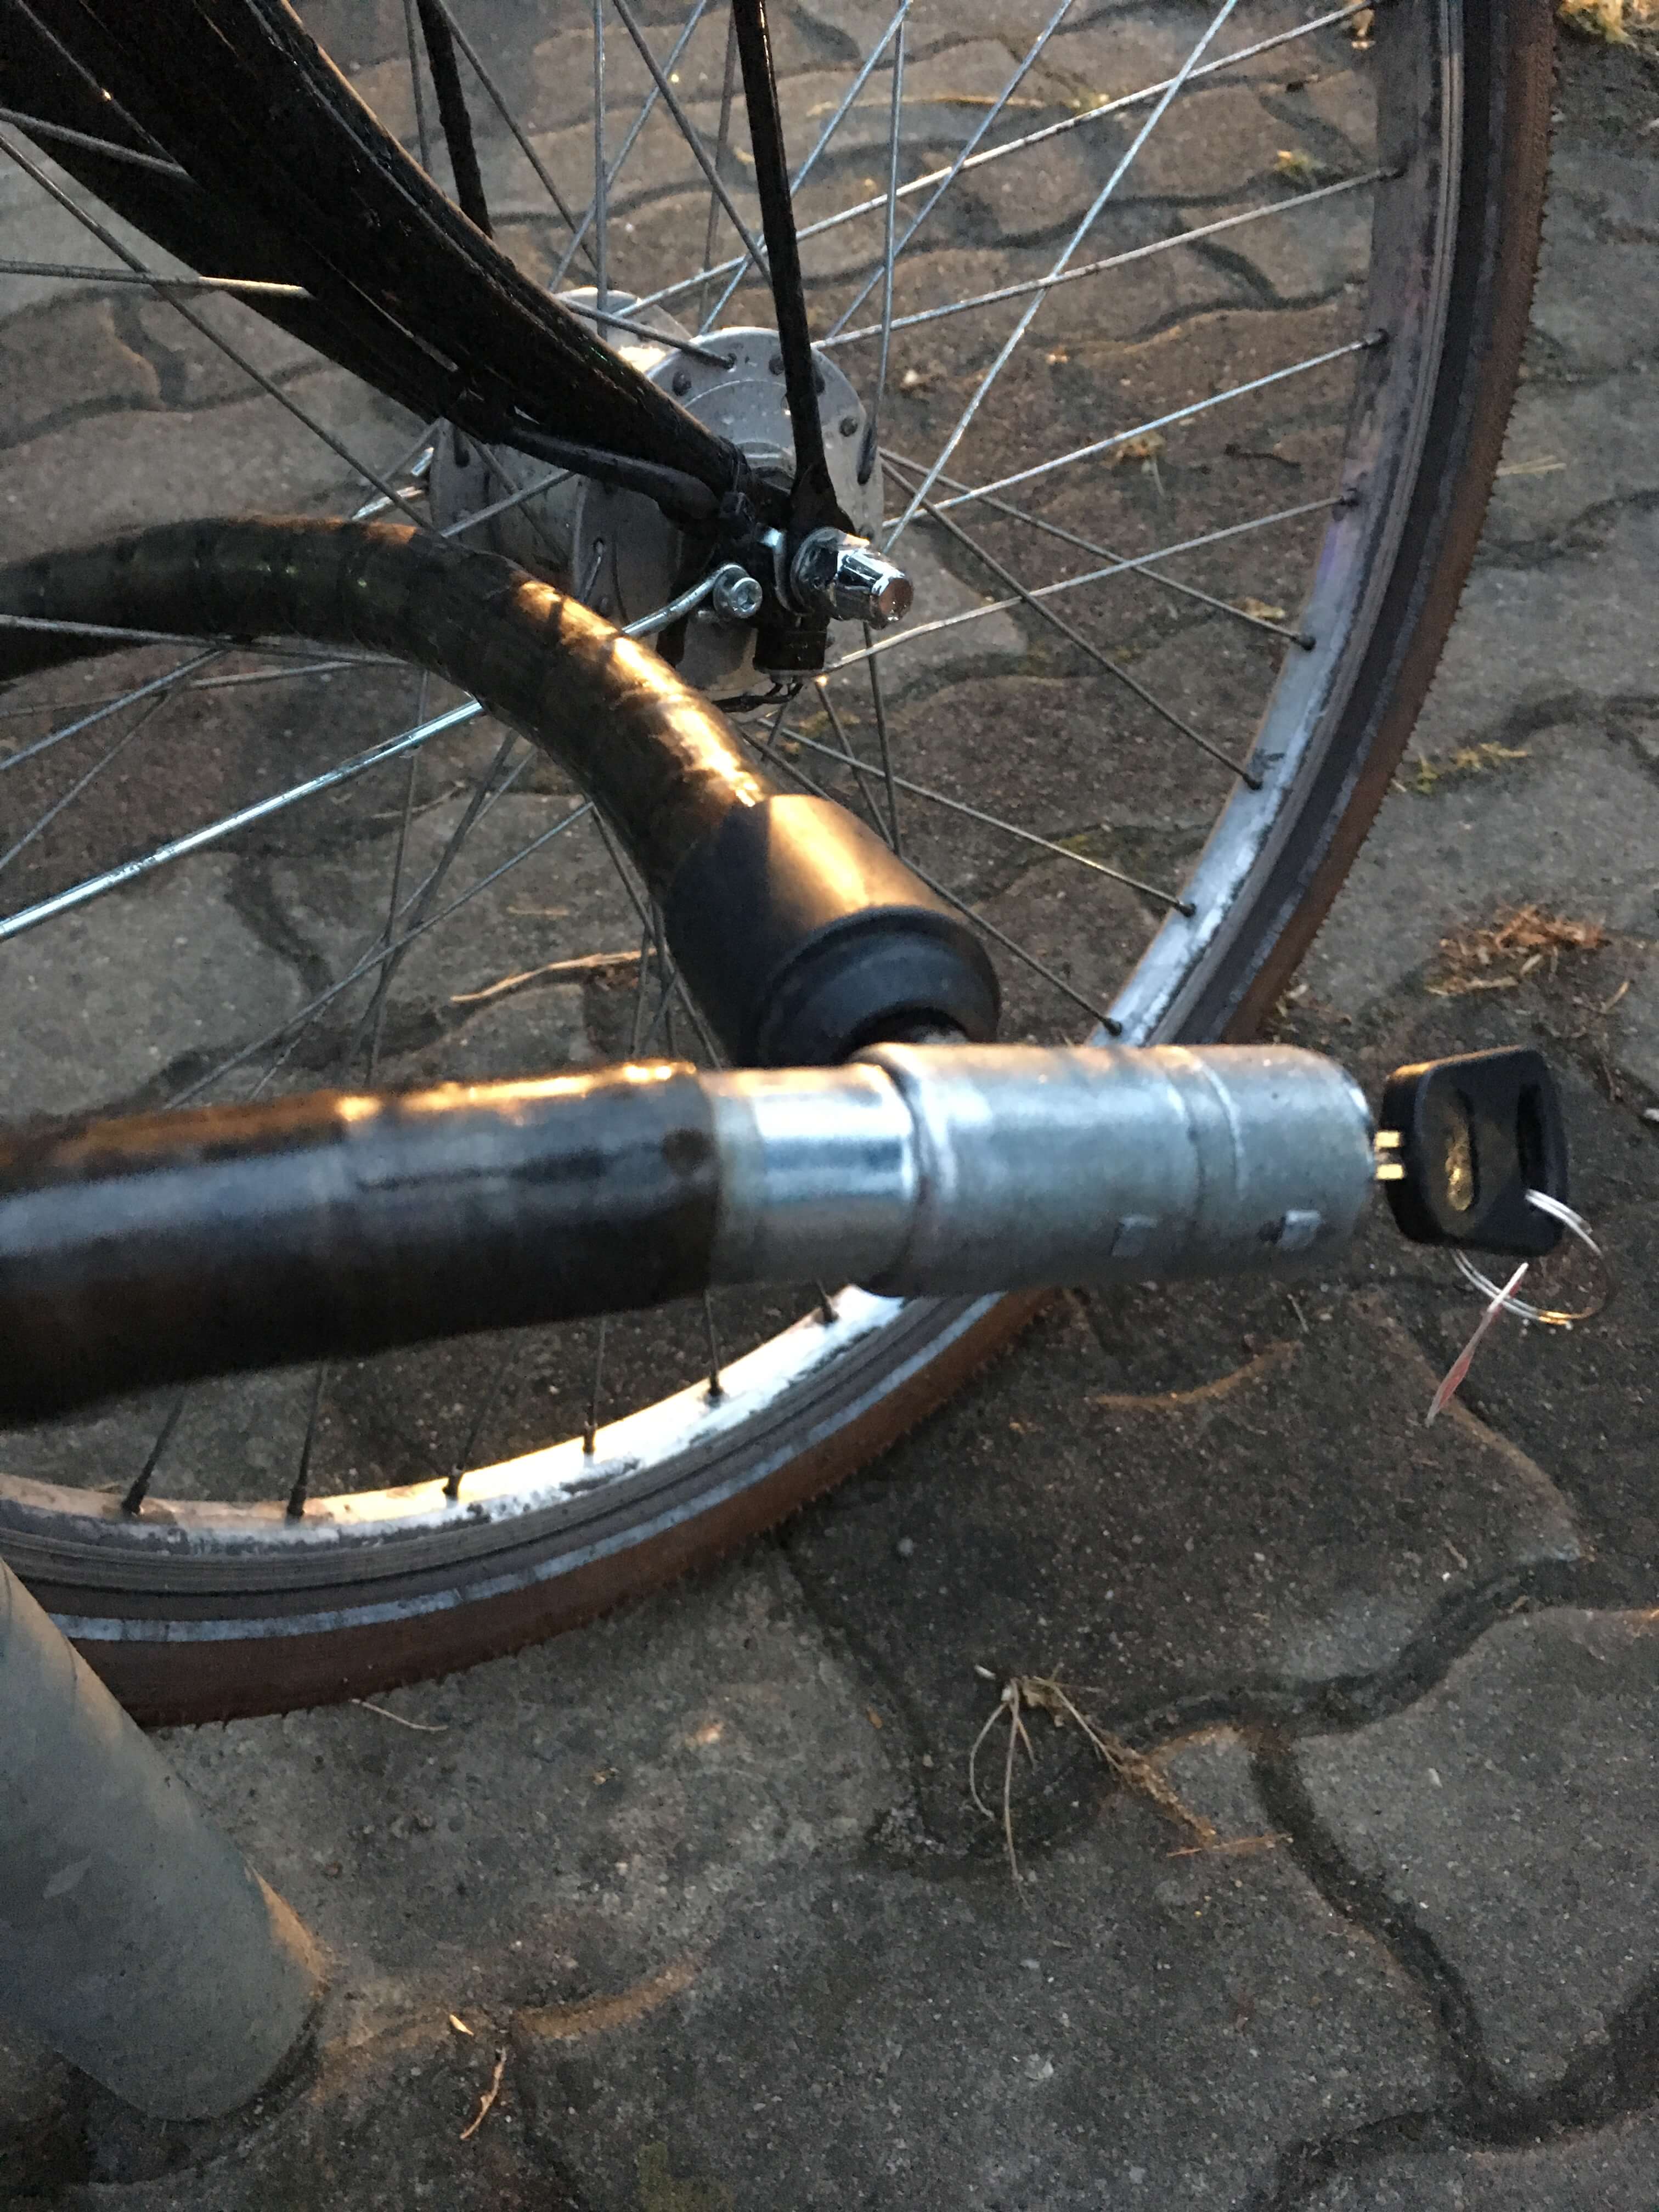 急に自転車の鍵が開かなくなった 自力で鍵を壊すための道具と方法